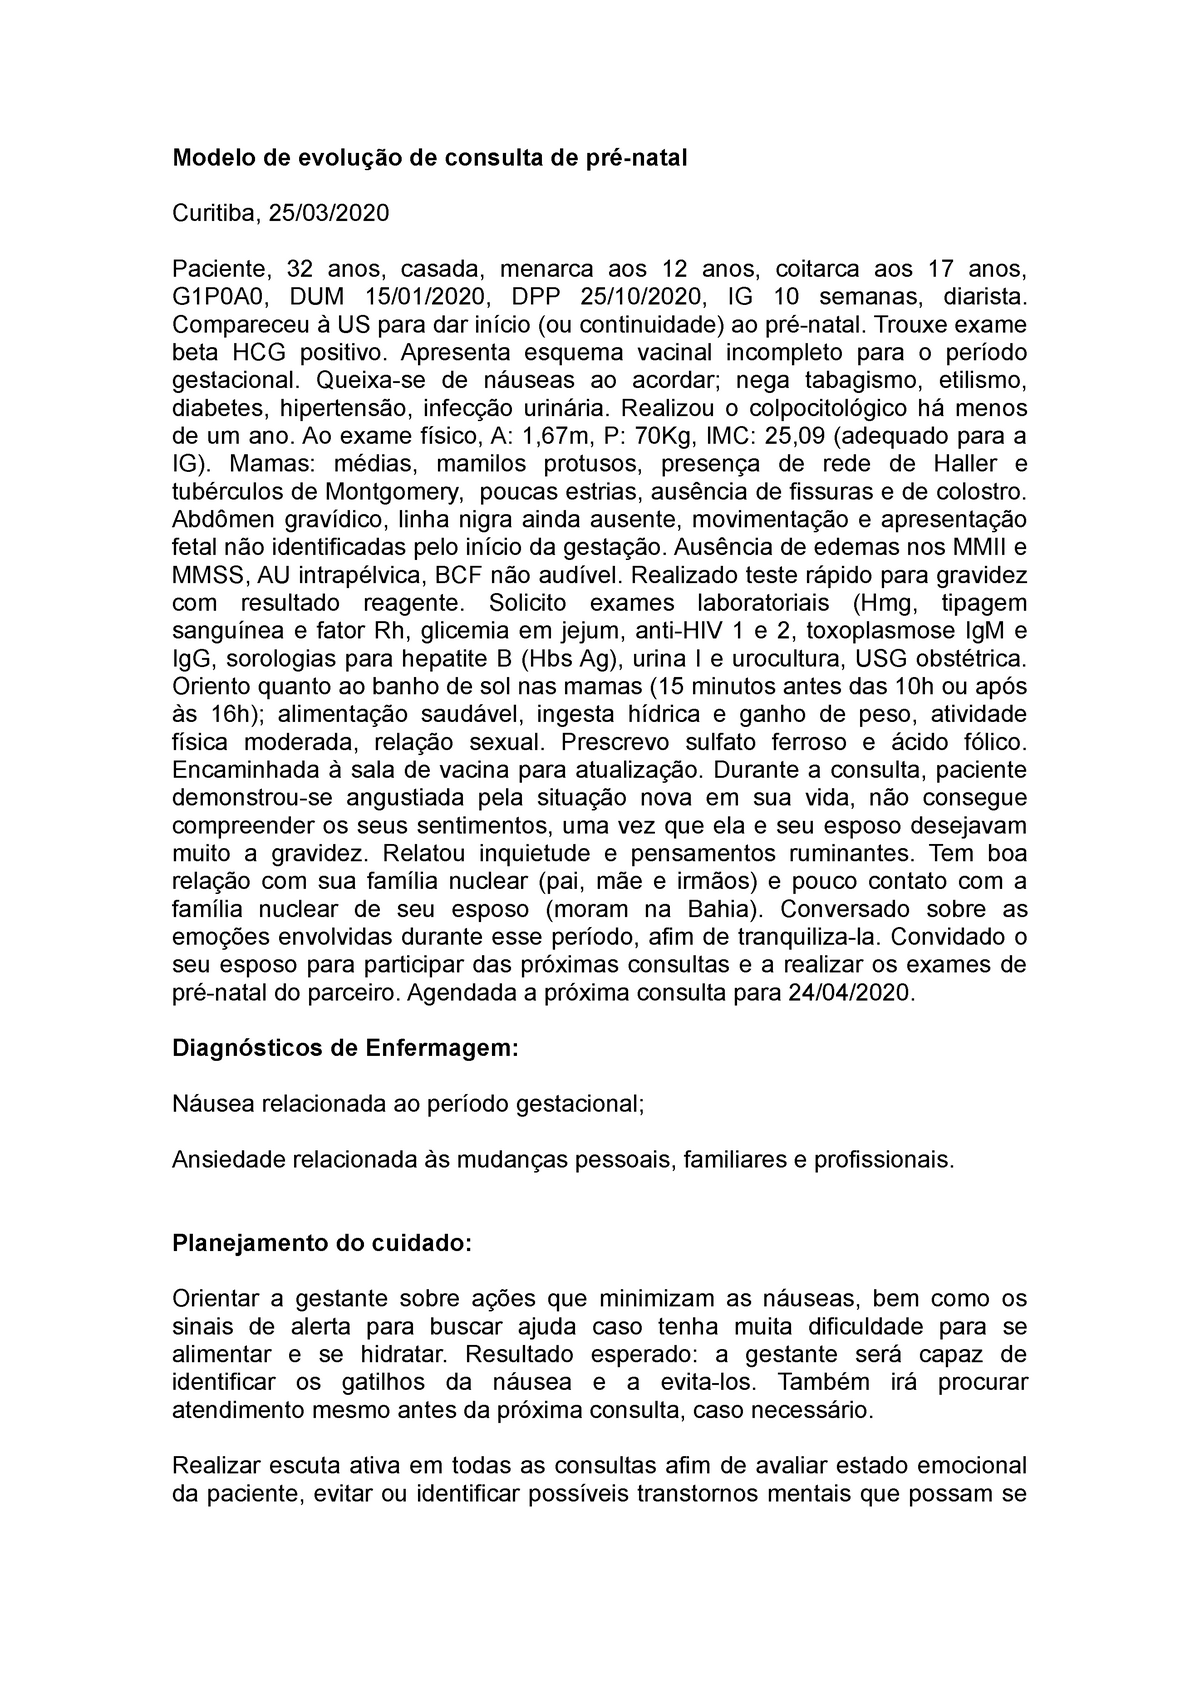 Modelo evolução consulta pré-natal - Modelo de evolução de consulta de pré- natal Curitiba, 25/03/ - Studocu